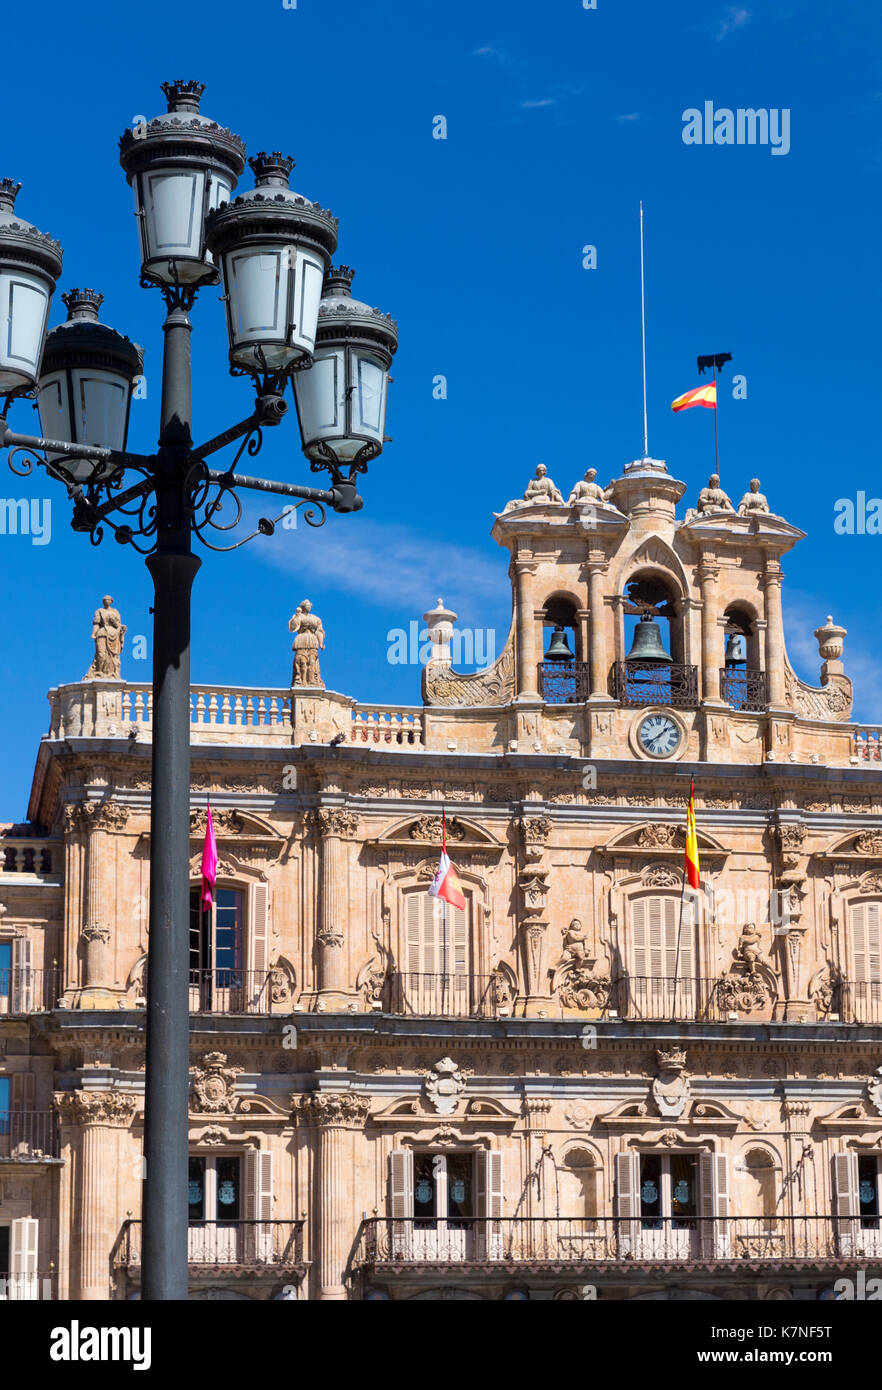 Casa consistoral de ville dans la célèbre Plaza Mayor - architecture de style baroque espagnol Salamanca, Espagne Banque D'Images